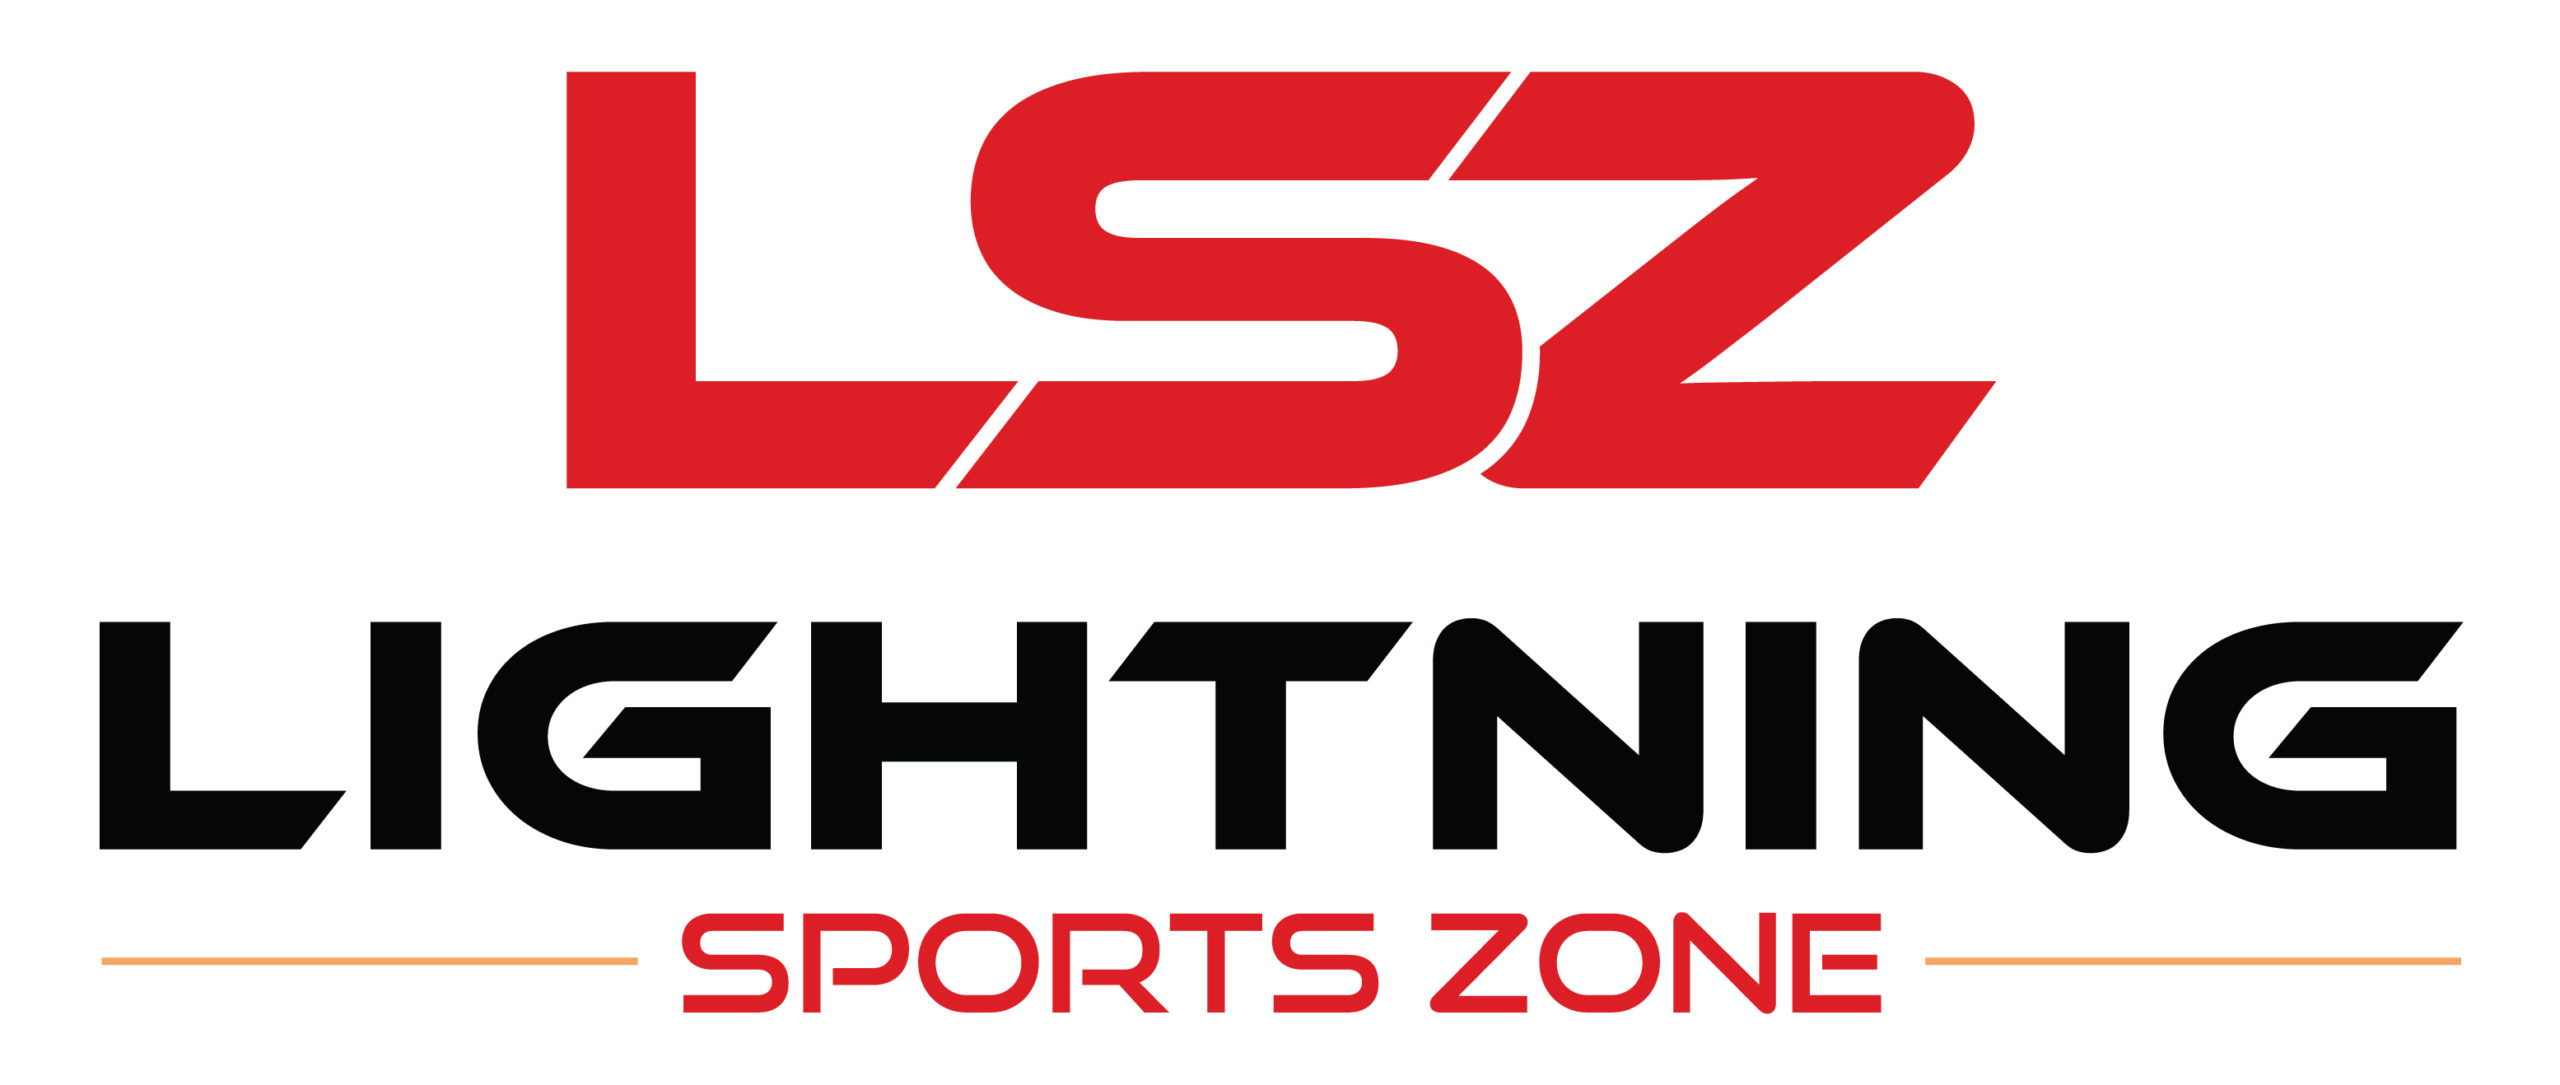 Lightning Sports Zone